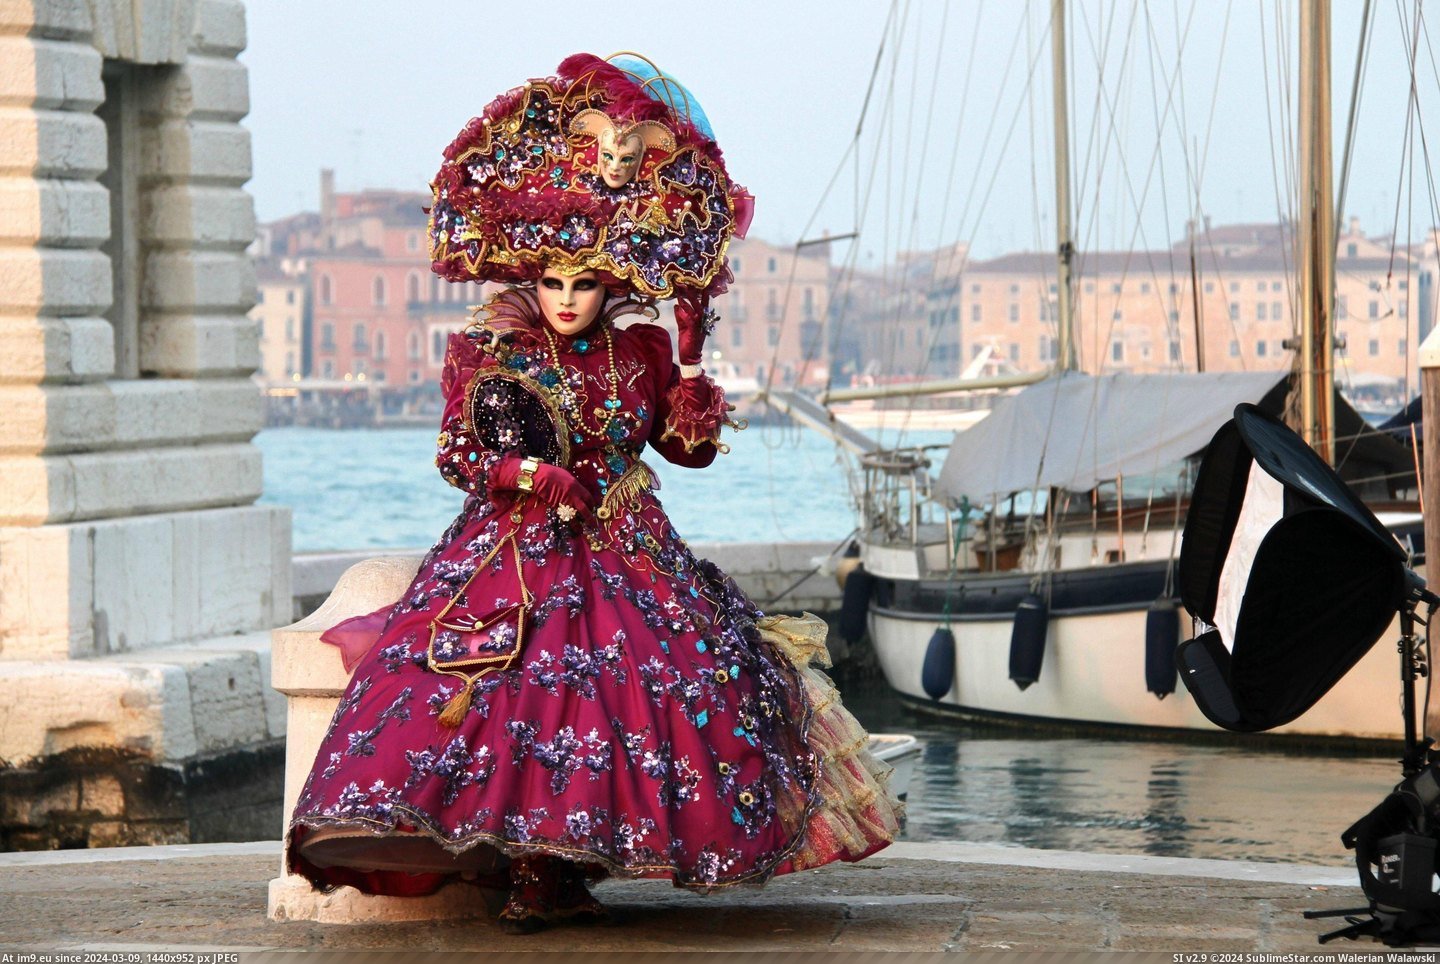 #Costume #Carnival #Venice [Pics] Venice Carnival Costume Pic. (Obraz z album My r/PICS favs))